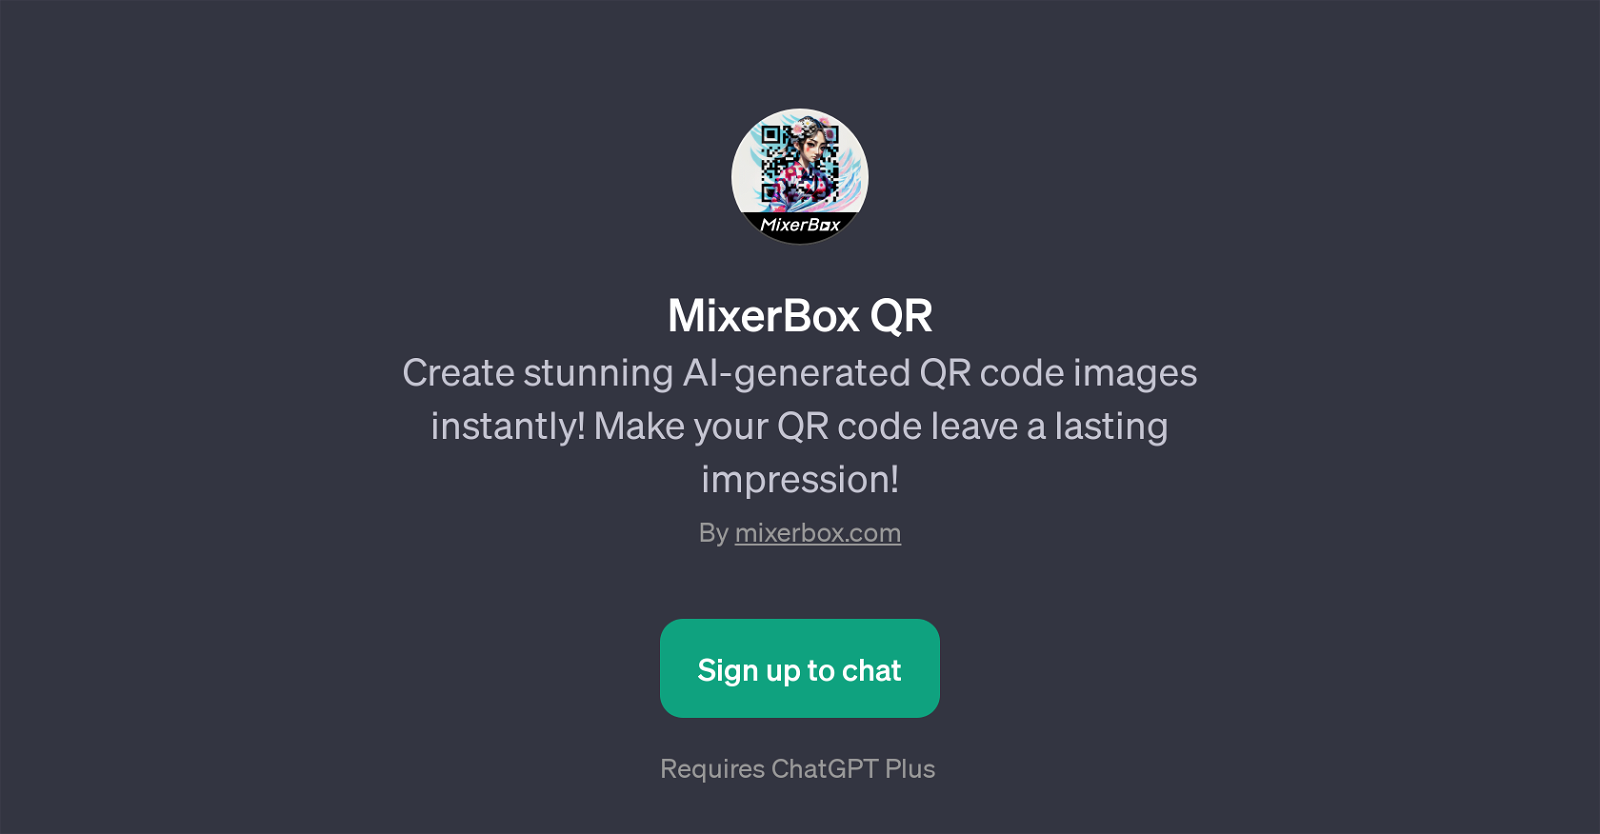 MixerBox QR website